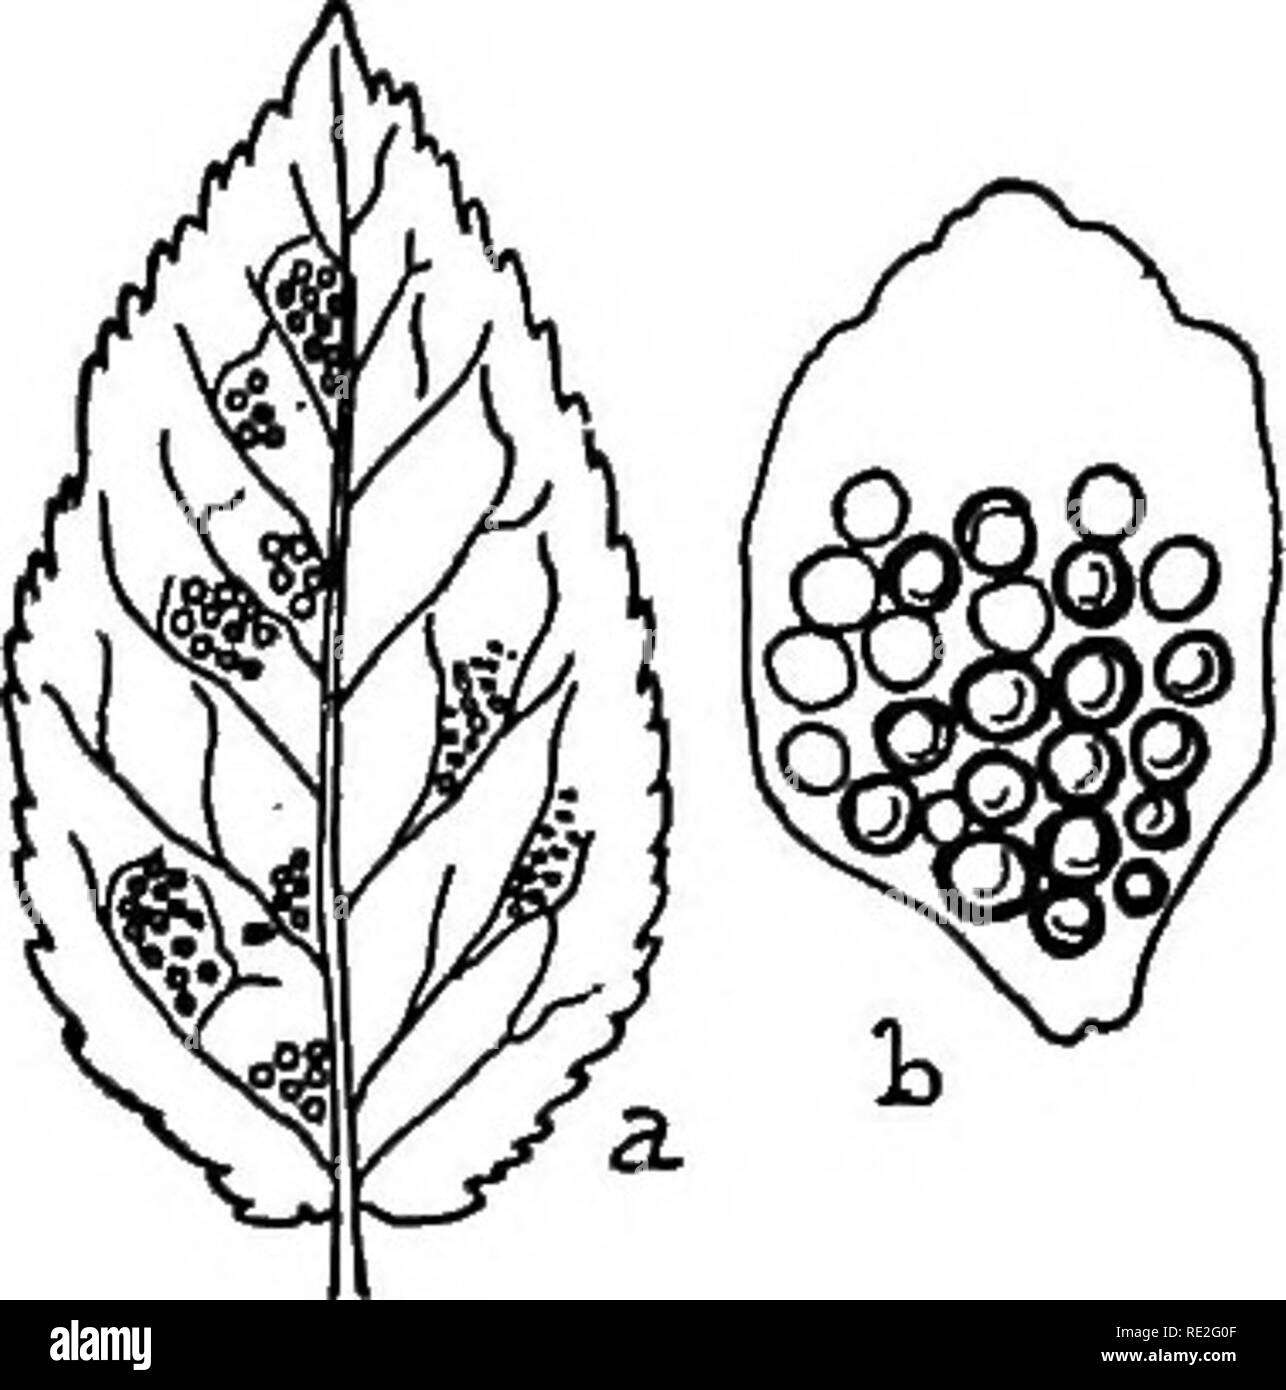 . Il British ruggine funghi (Uredinales) la loro biologia e classificazione. Ruggine di funghi. THECOPSORA 369 Vredo Padi K. et S. exsicc. 187. Cooke, Handb. p. 527. U. porphyrogenita Kze. ; Cooke, micr. Fung. p. 216. Padi Melampsora Cooke, Handb. p. 523 (1871). Plowr. Ured. p. 246. Fung. Fl. Yorkshire, p. 184. Puociniasirum Dietel Padi in Eng. u. Prantl e collaboratori, Naturl. Pflanz. i. 1**, p. 47. Fischer, Ured. Sohweiz, p. 463, f. 303; Centralbl. f. Bakter. 2. xv. 227. Tkecopsora areolata Magn. in Hedwigia, 1875, p. 123. Sacc. Syll. vii. 764. Colore biancastro, pustolosa, piatta, aperto, espirando una copertura sulla parte superiore. Spermogon Foto Stock